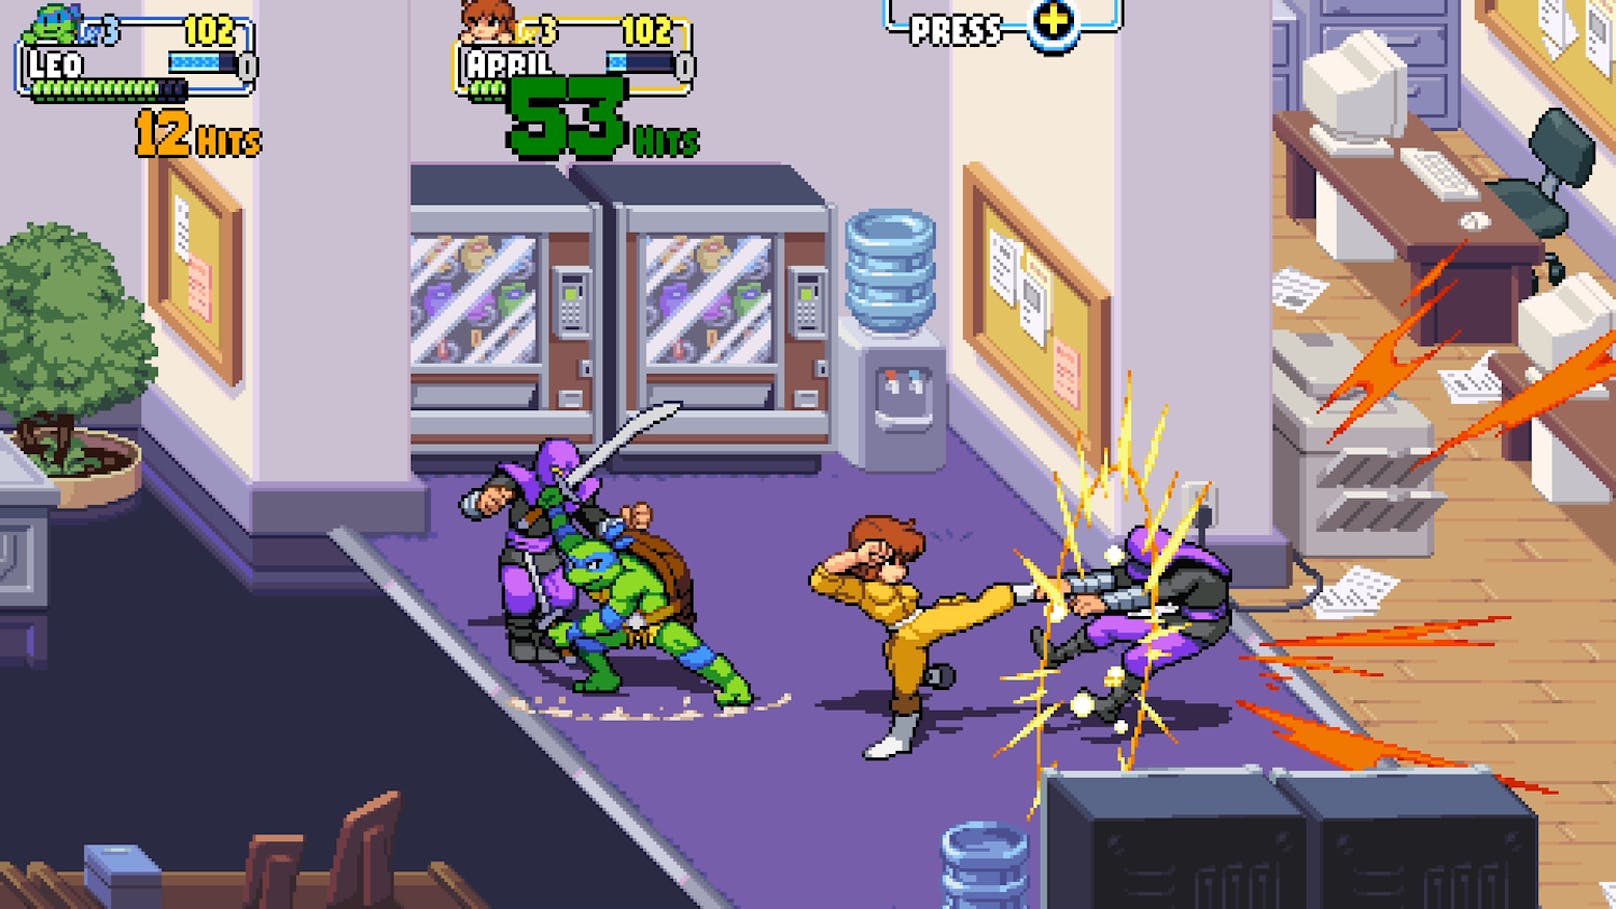 Stilistisch angelehnt ist das Game dabei an die von Konami in den 1980er und 1990er Jahren entwickelten Arcade- und Heimkonsolenspiele. "Shredder's Revenge" ist also ein Side-Scrolling-Action-Brawler mit einem verpixelten Artstyle.